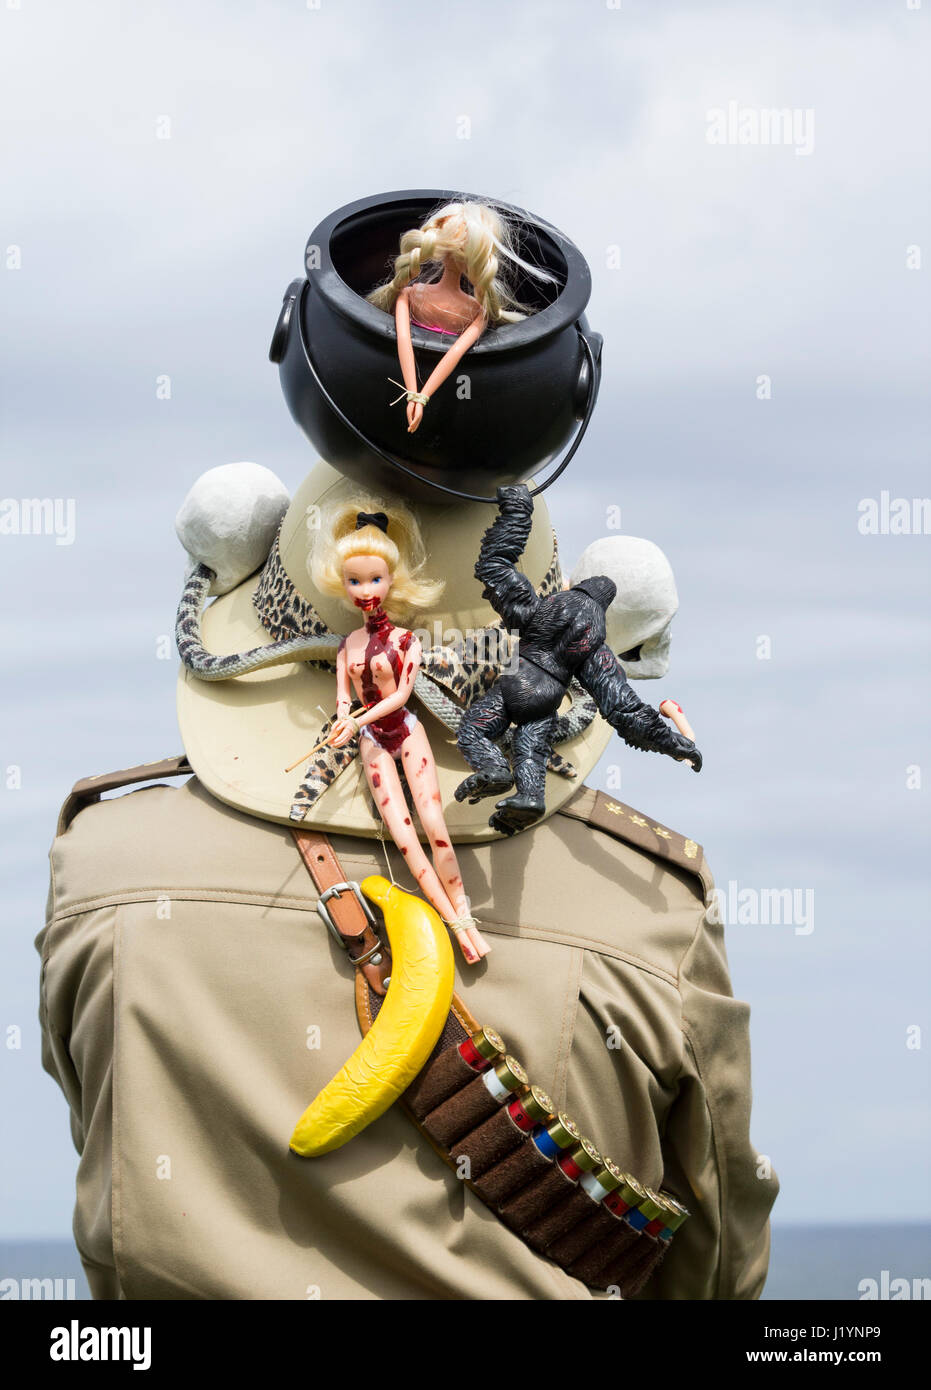 Whitby, North Yorkshire, Angleterre, Royaume-Uni. Un homme portant un costume de safari avec pot de ragoût Barbie sur casque de moelle. Banque D'Images